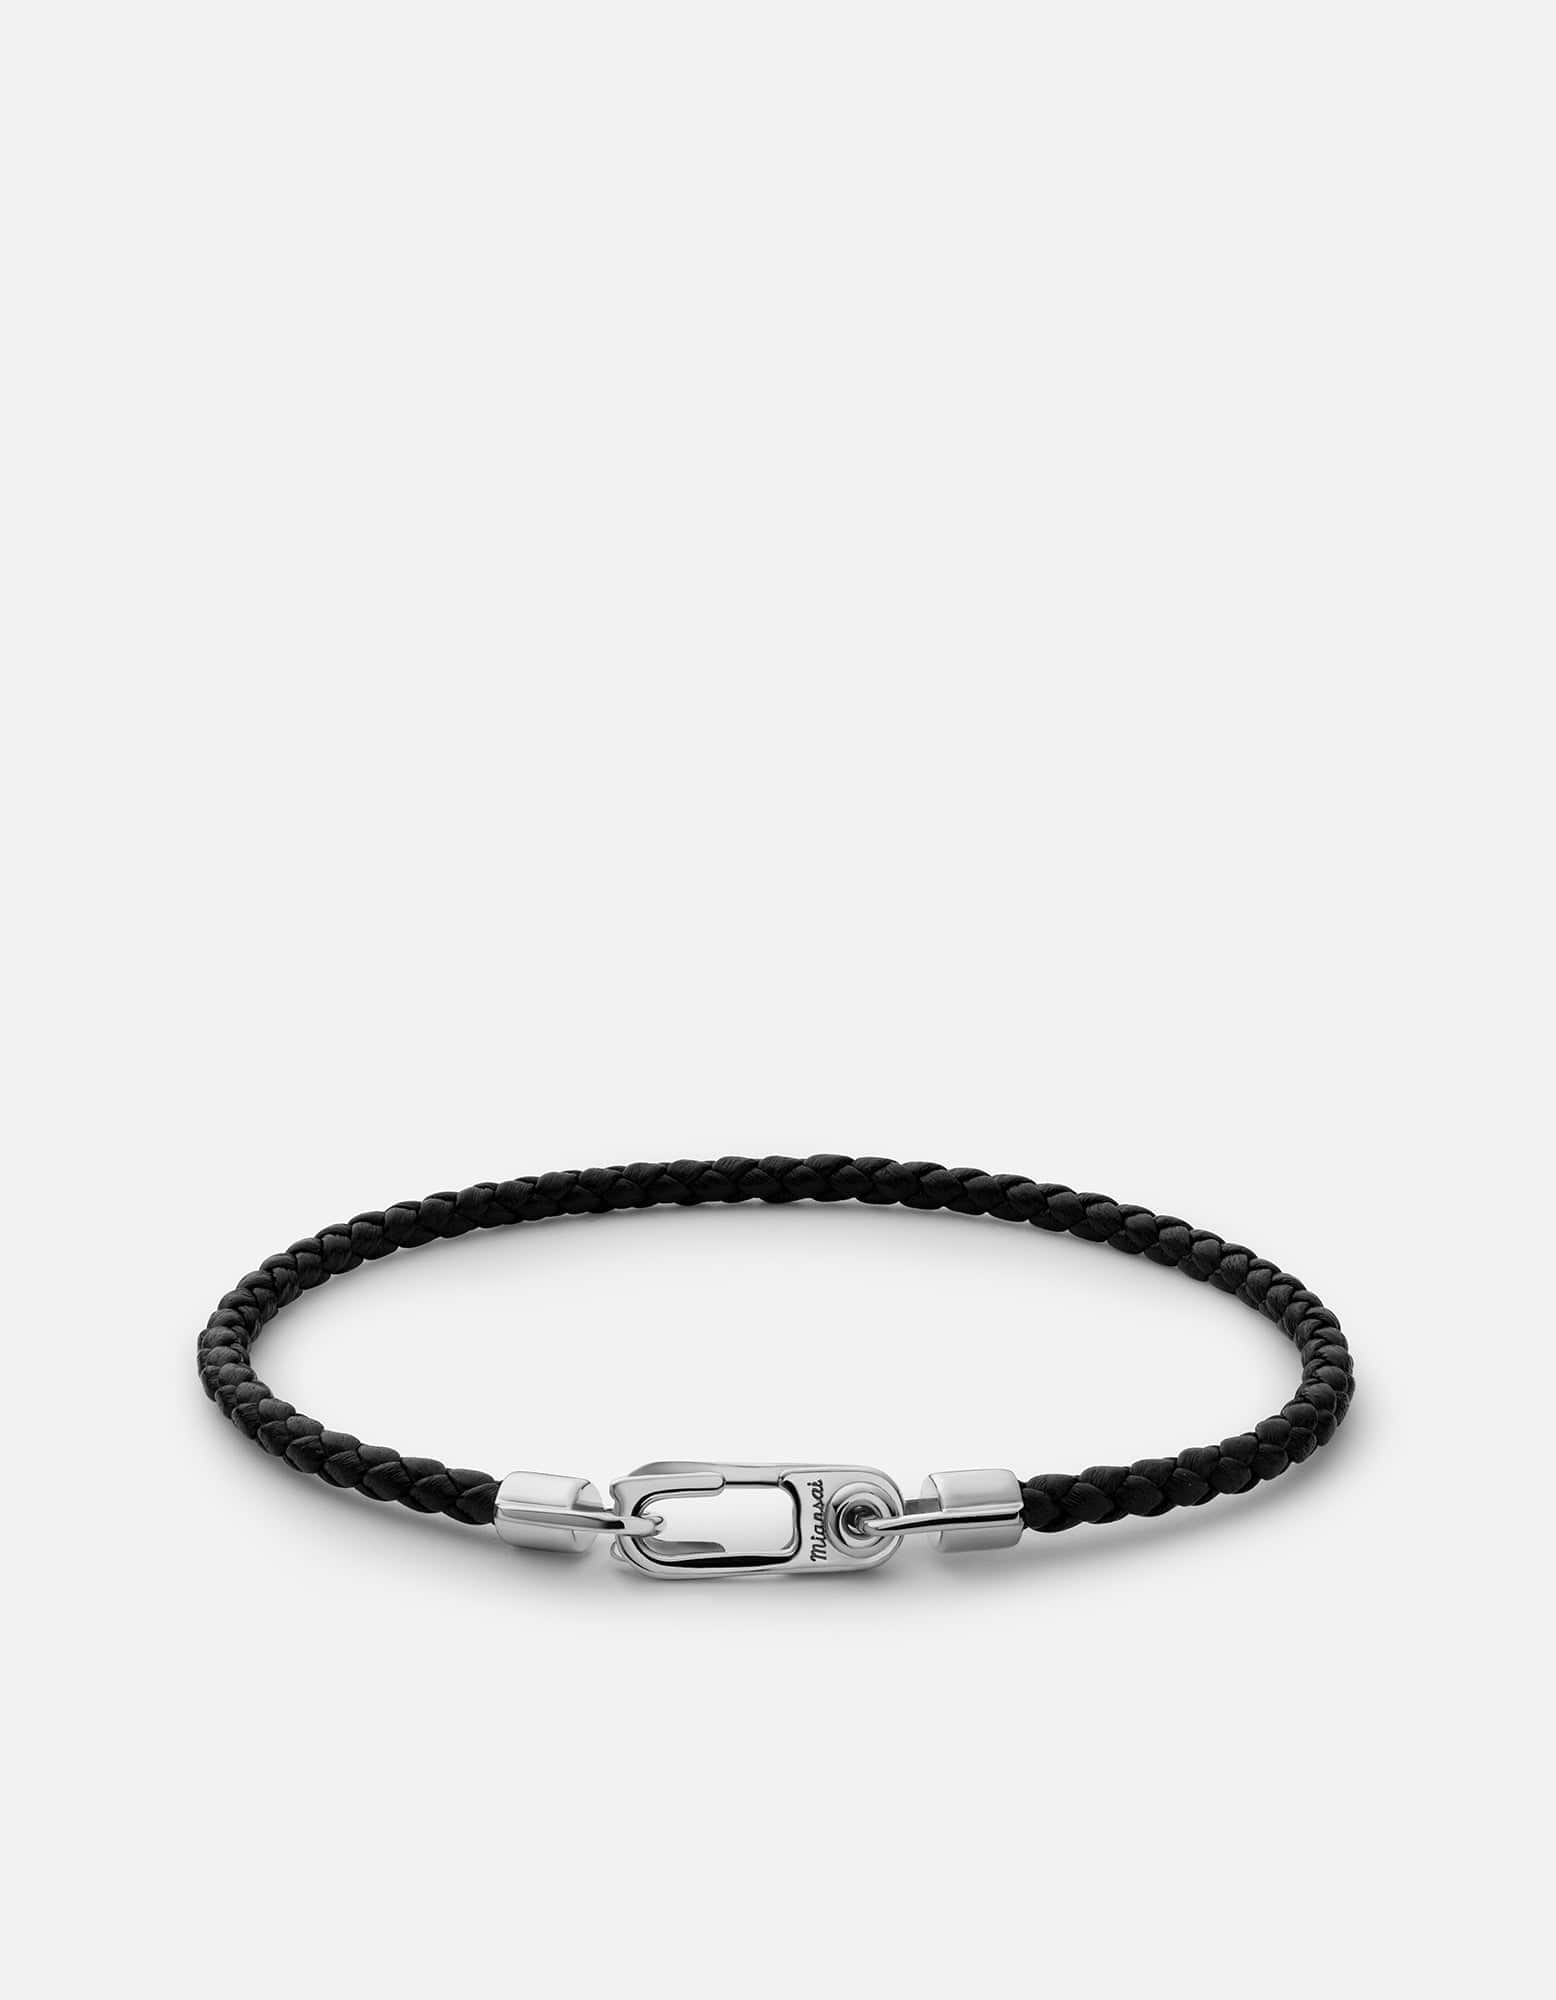 Black Leather & Sterling Silver Bracelet